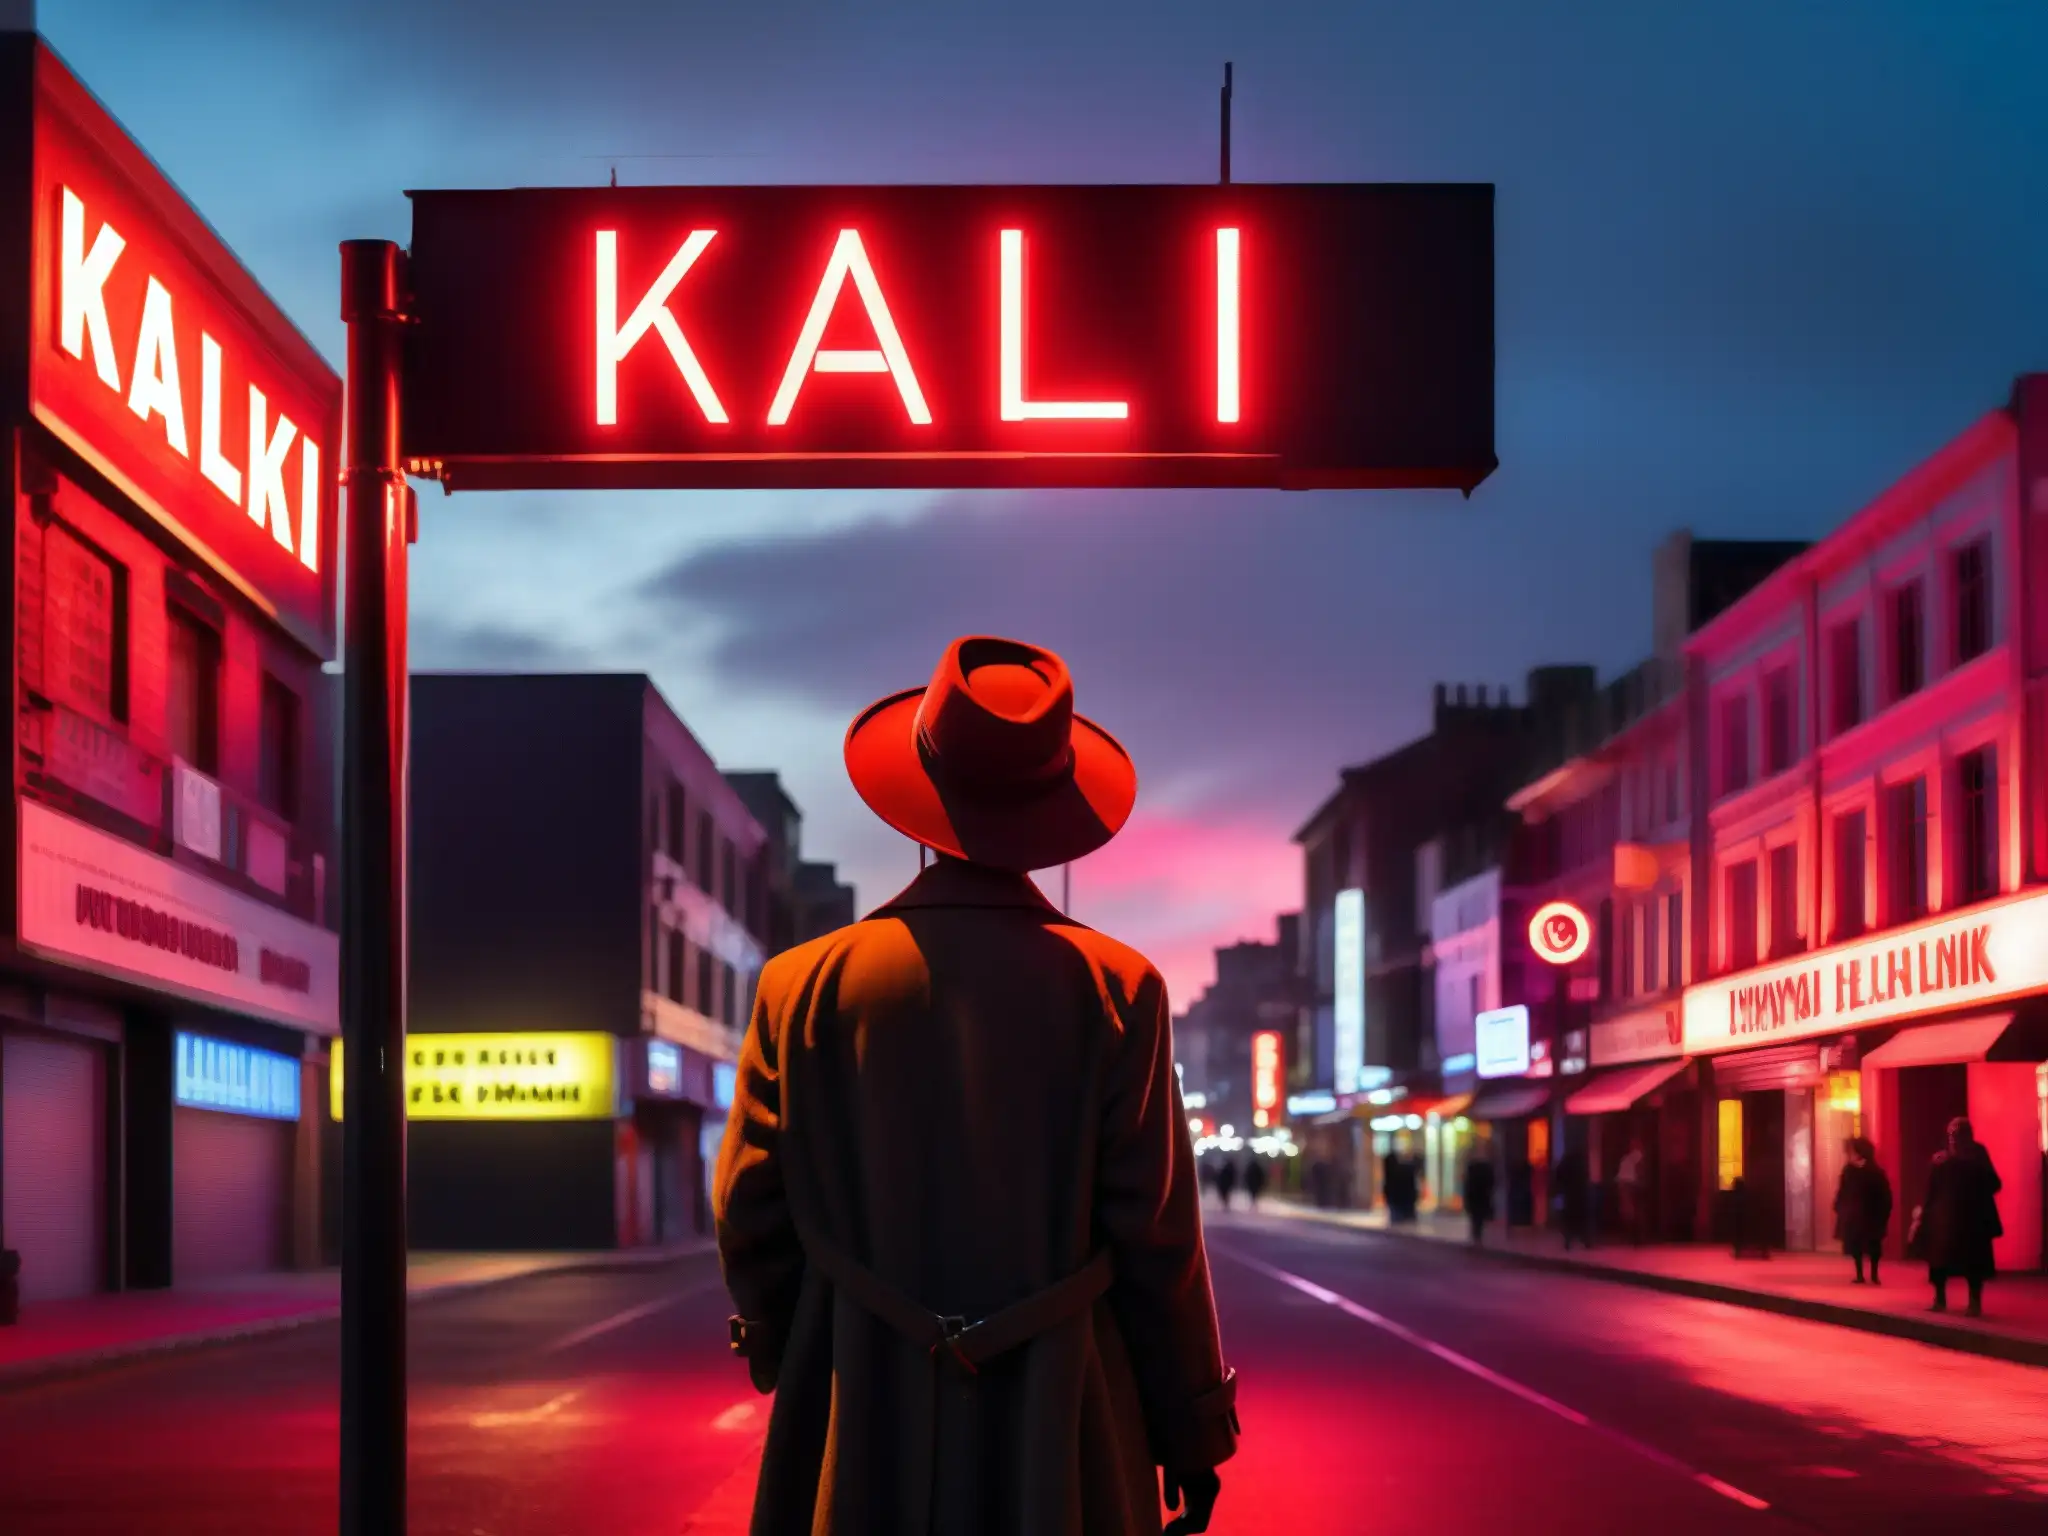 En la imagen se ve una misteriosa calle nocturna con una figura sombría bajo una farola parpadeante y un letrero de neón con la palabra 'Kalki'